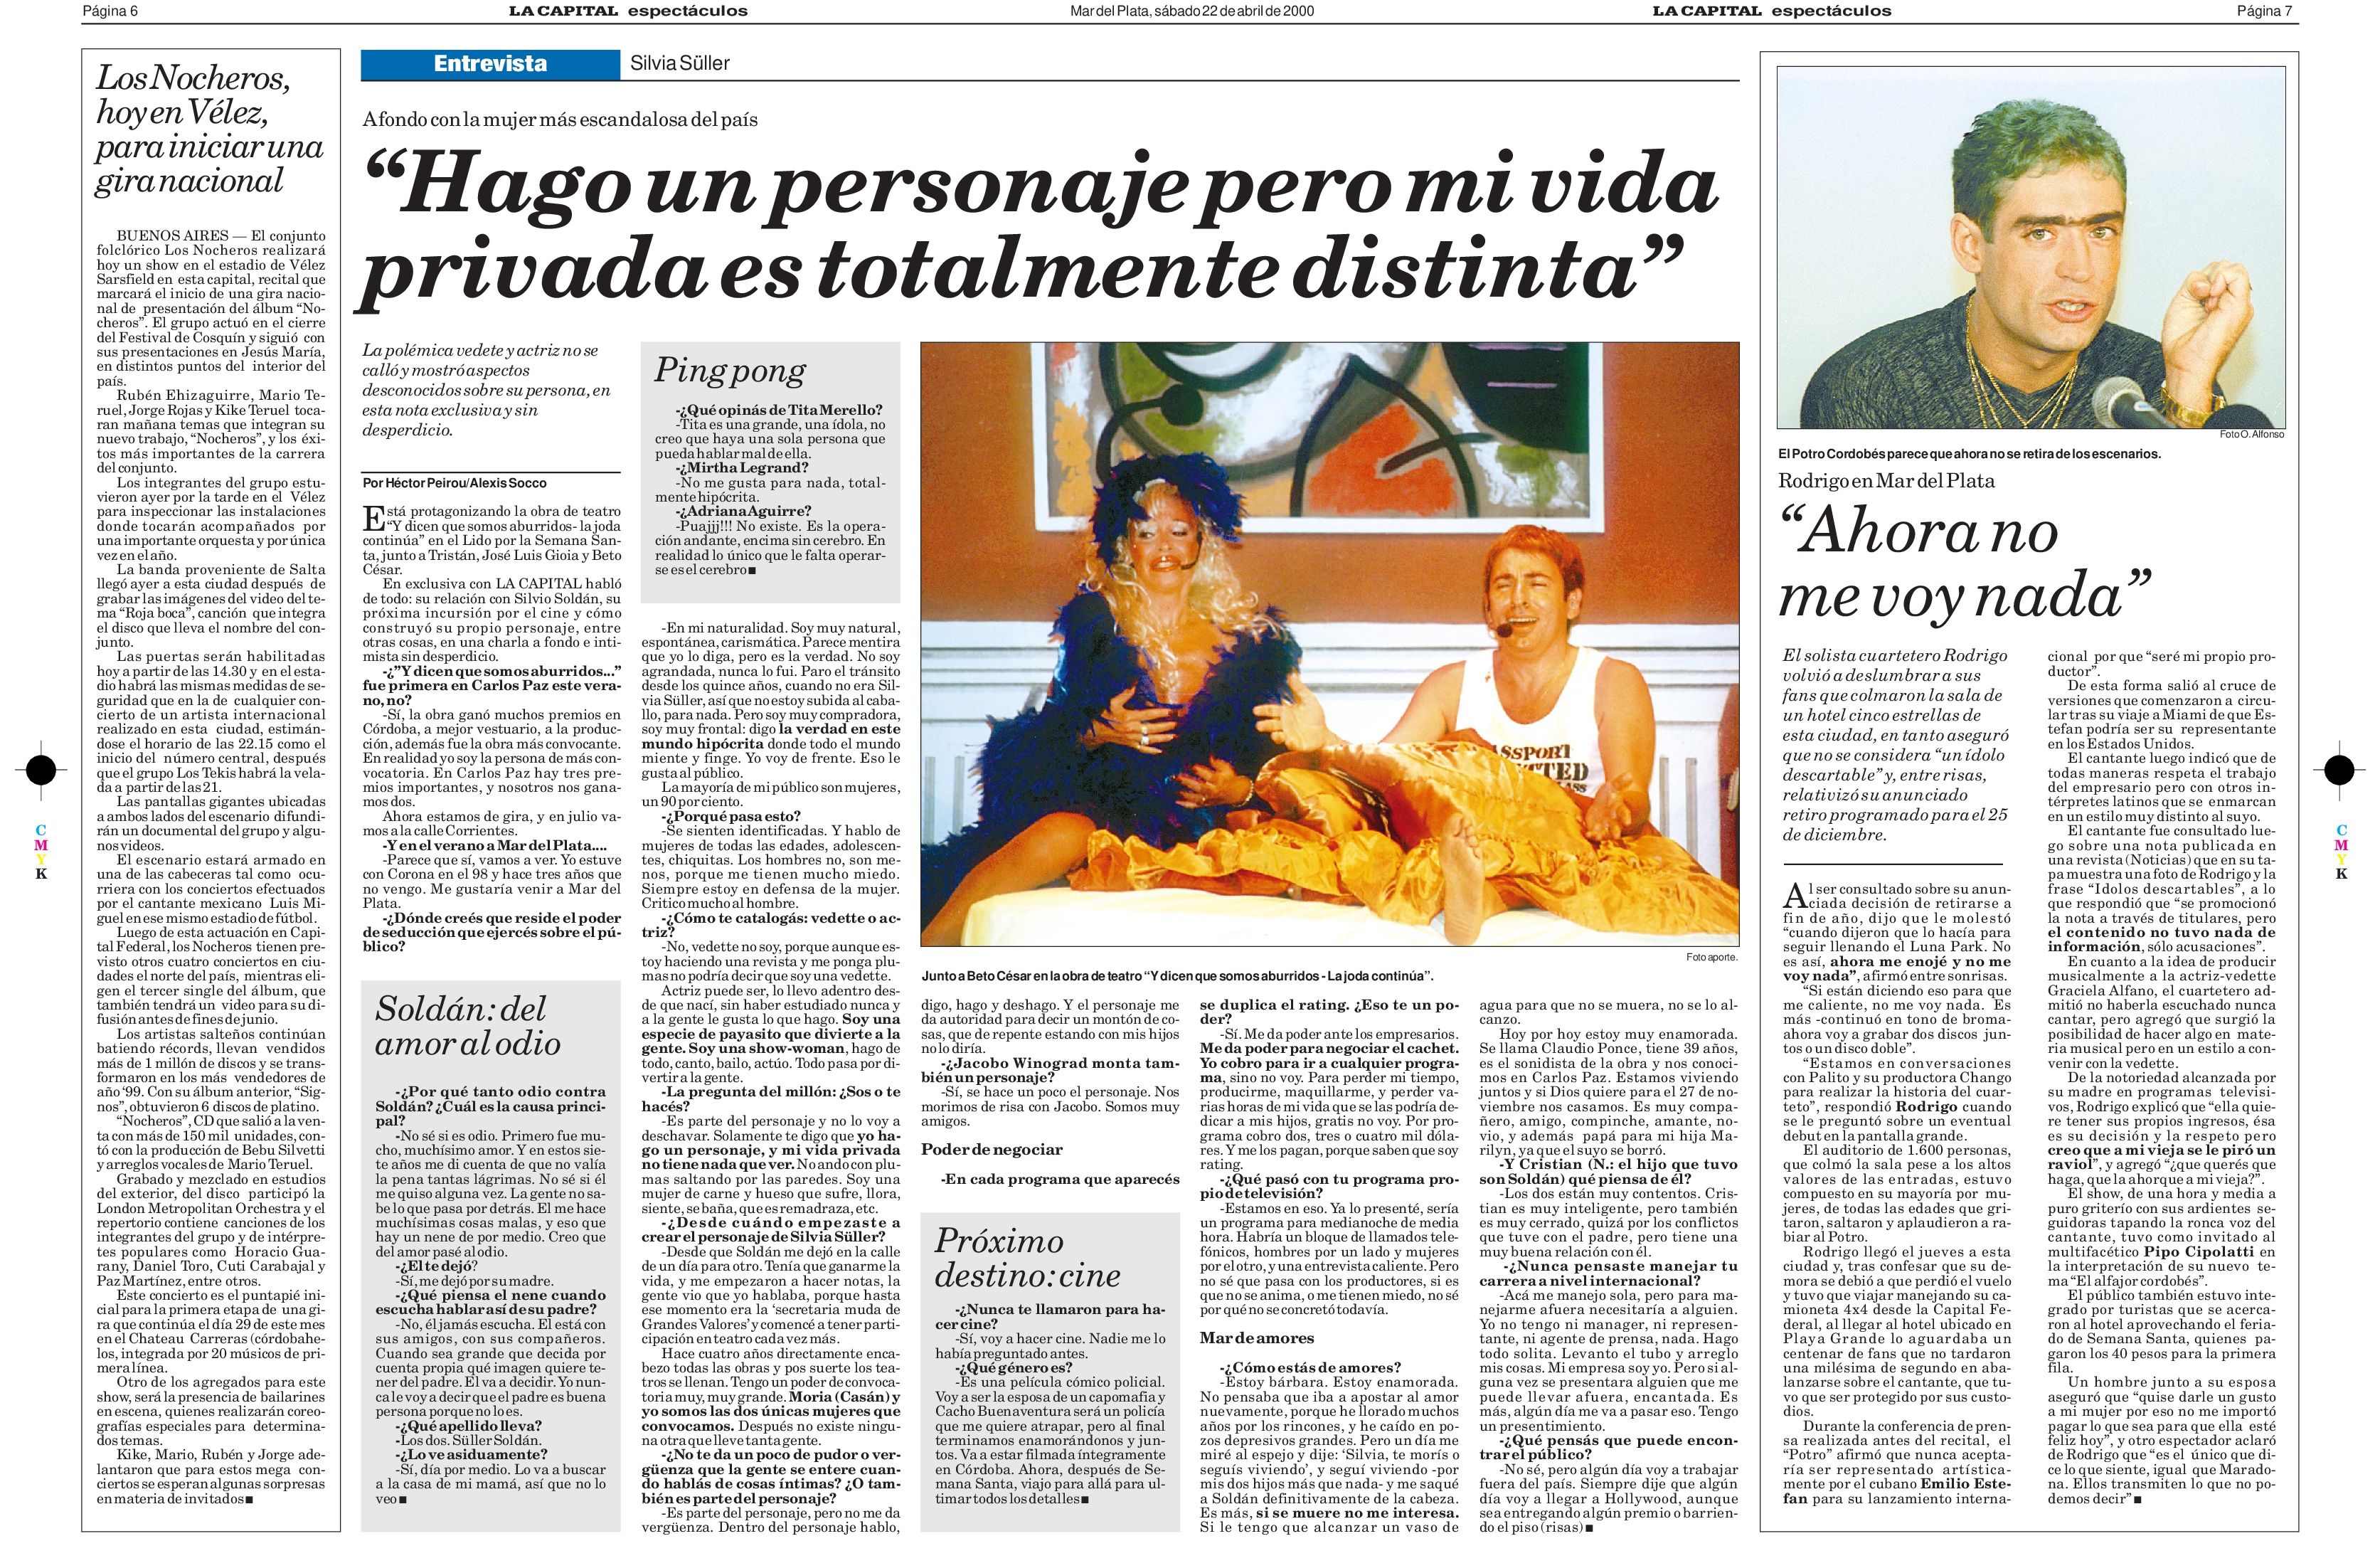 "El 'Potro' desensilla", escribió el diario LA CAPITAL sobre el freno del cantante a su retiro.